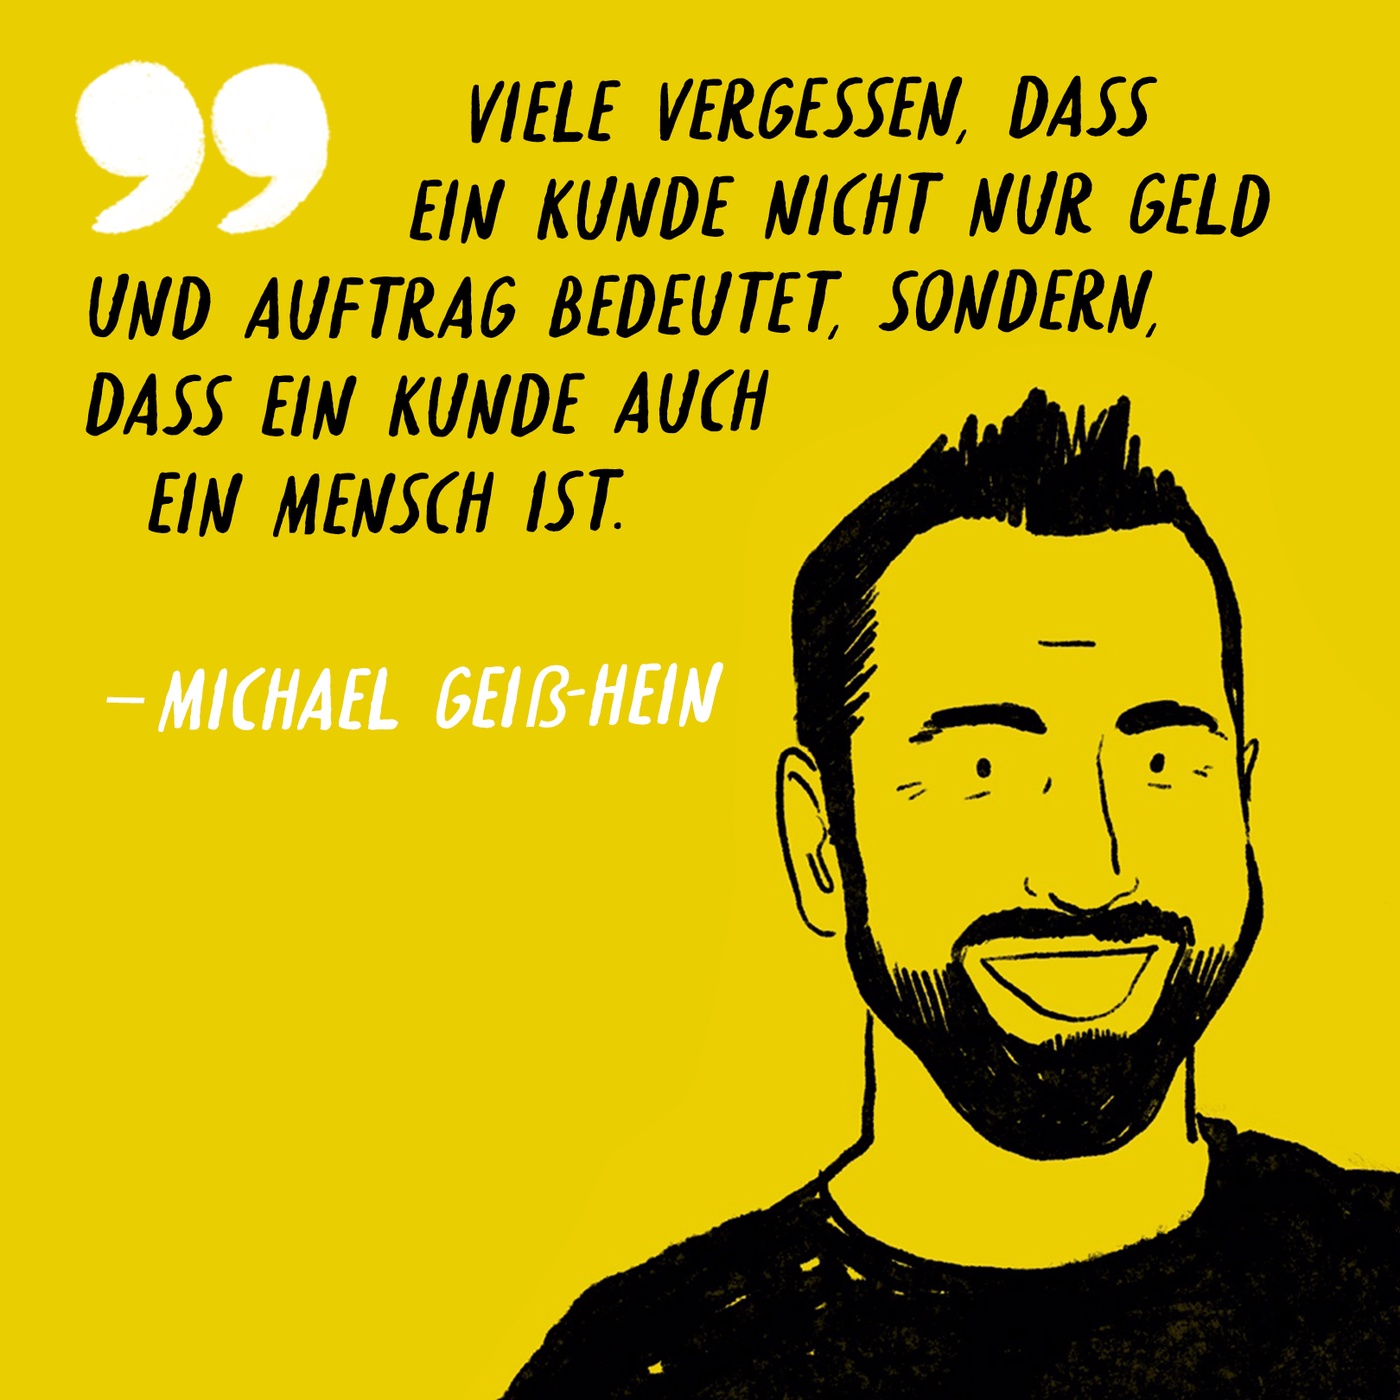 Bonus zu Folge 24: Mini-Interview mit Michael Geiß-Hein AKA Mister Maikel